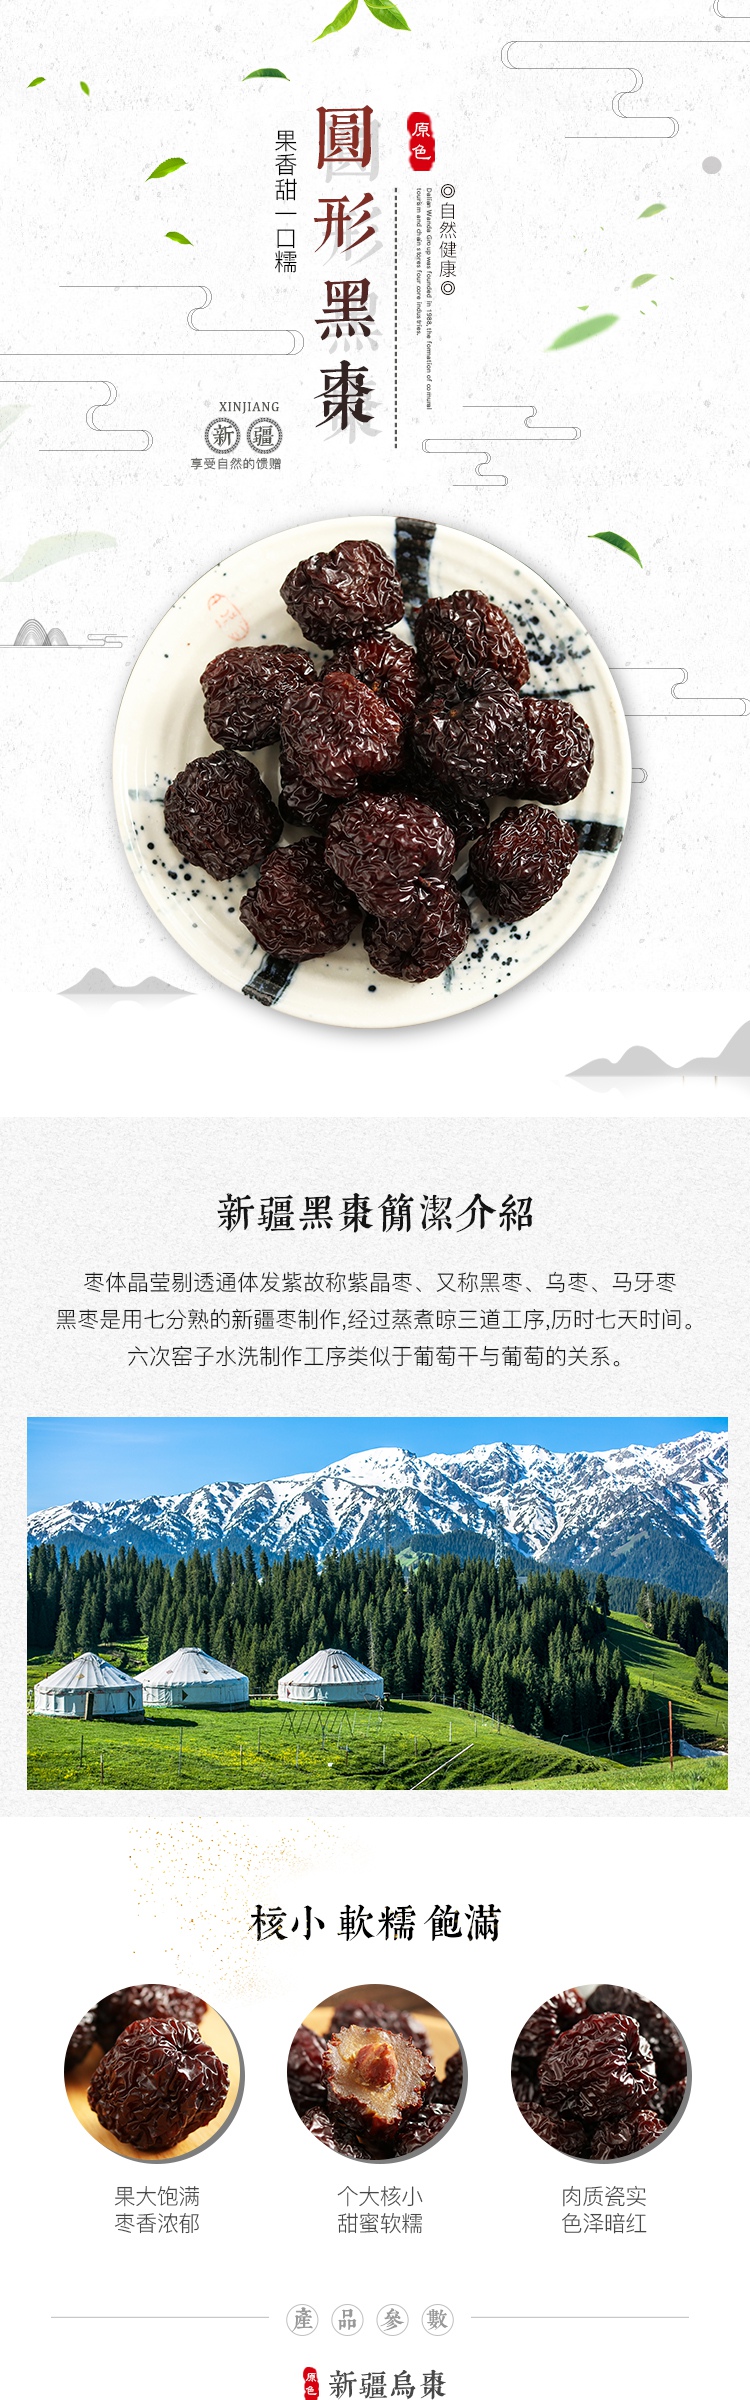 中国风新中式食品茶饮枣子详情页